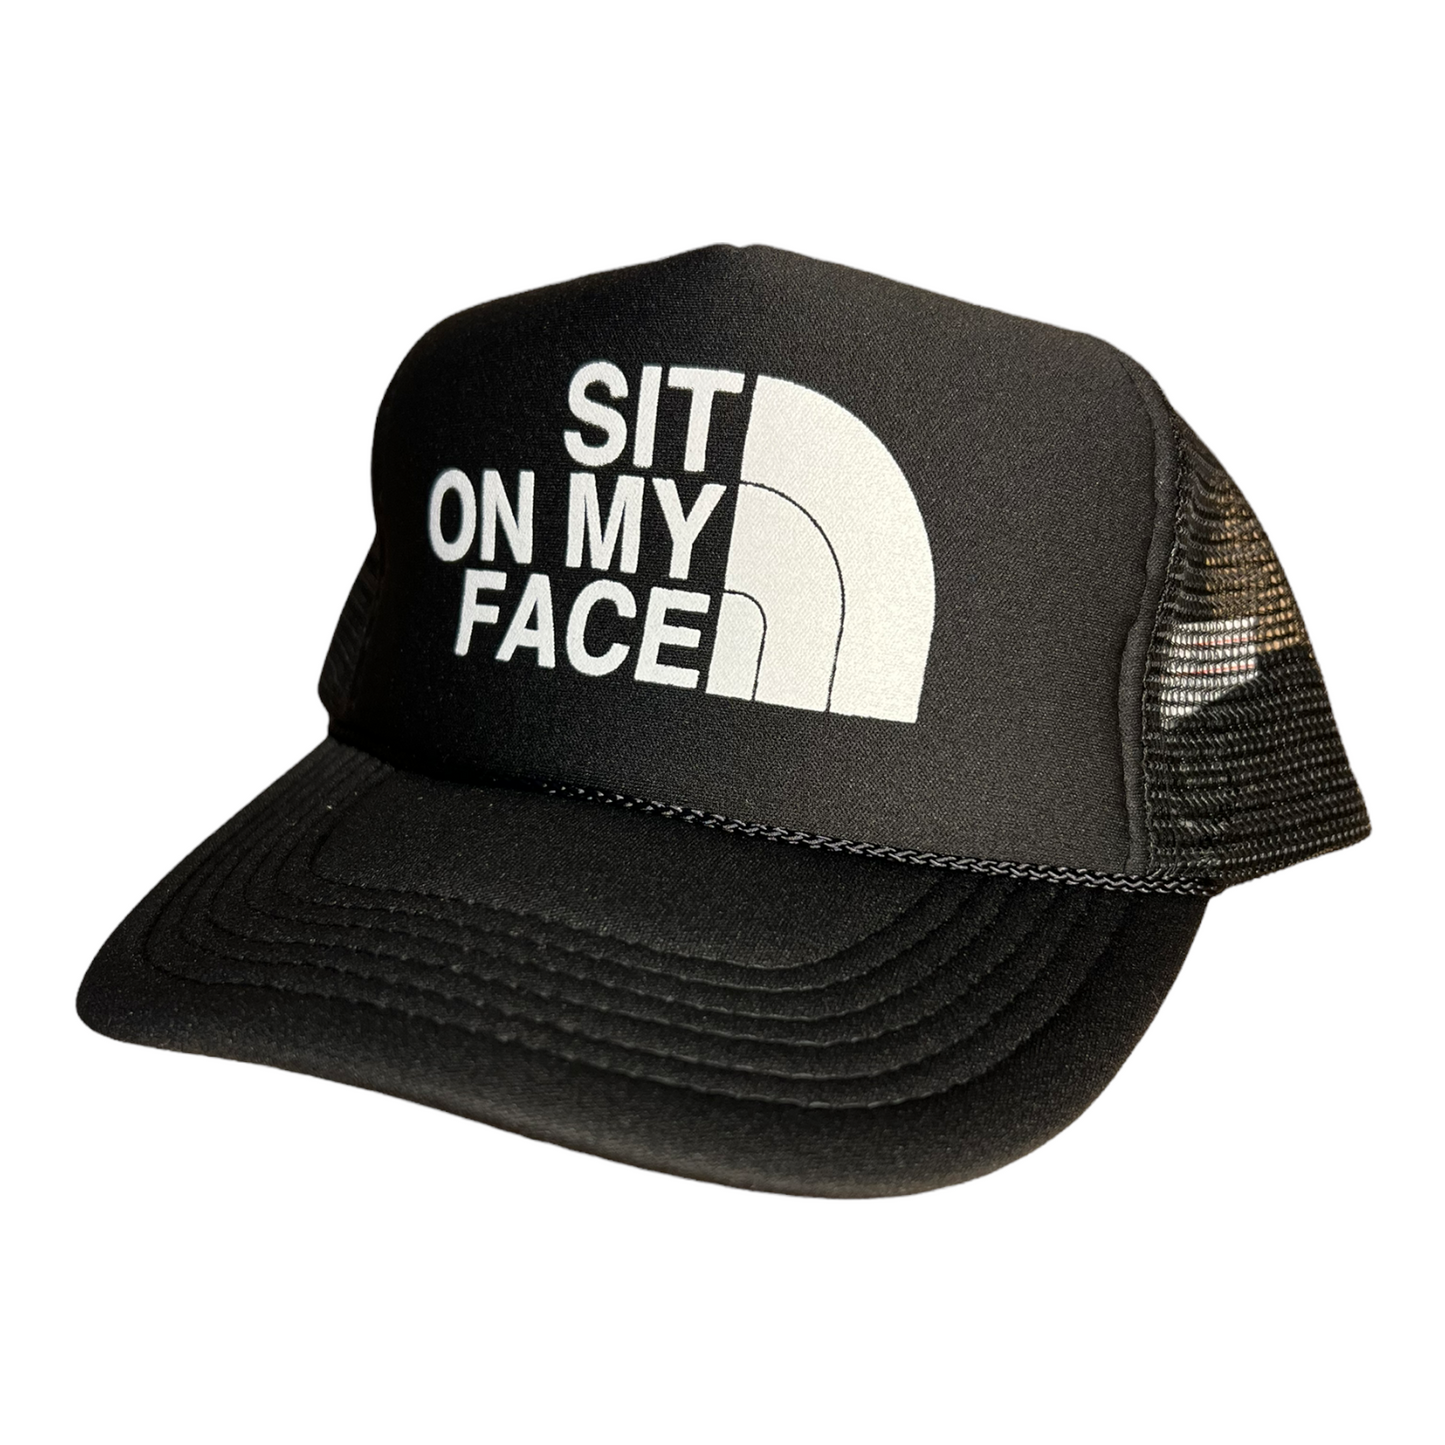 Sit On My Face Trucker Hat Funny Trucker Hat